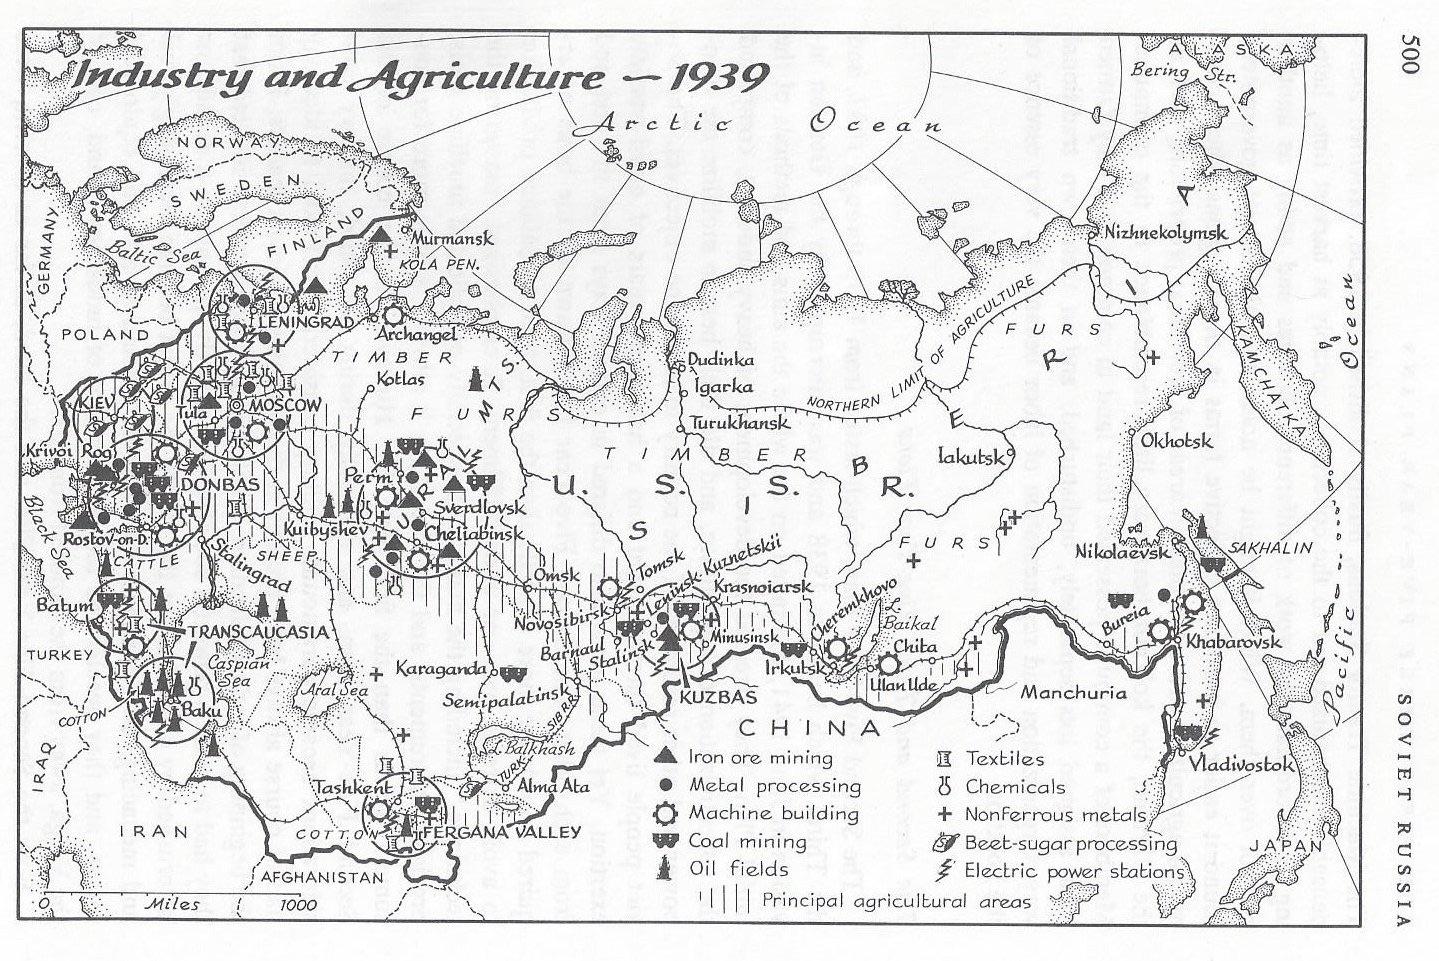 Przemysł i rolnictwo w Związku Radzieckim w 1939